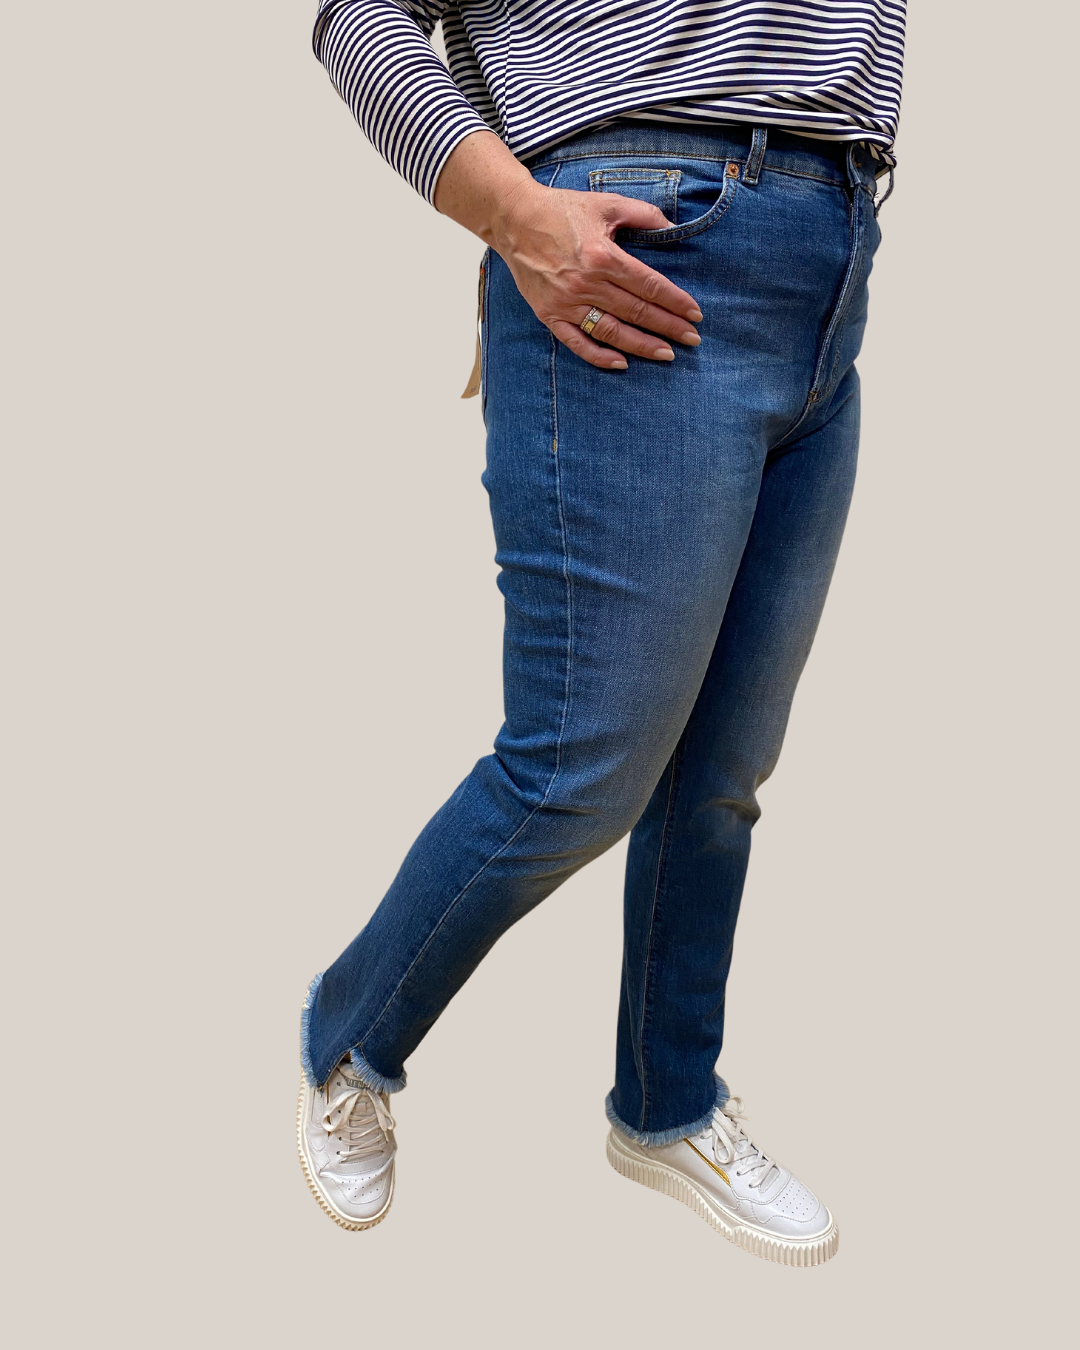 schmale verwaschene ausgefranste Jeans von Marina Rinaldi - grosse Grössen - deboerplus